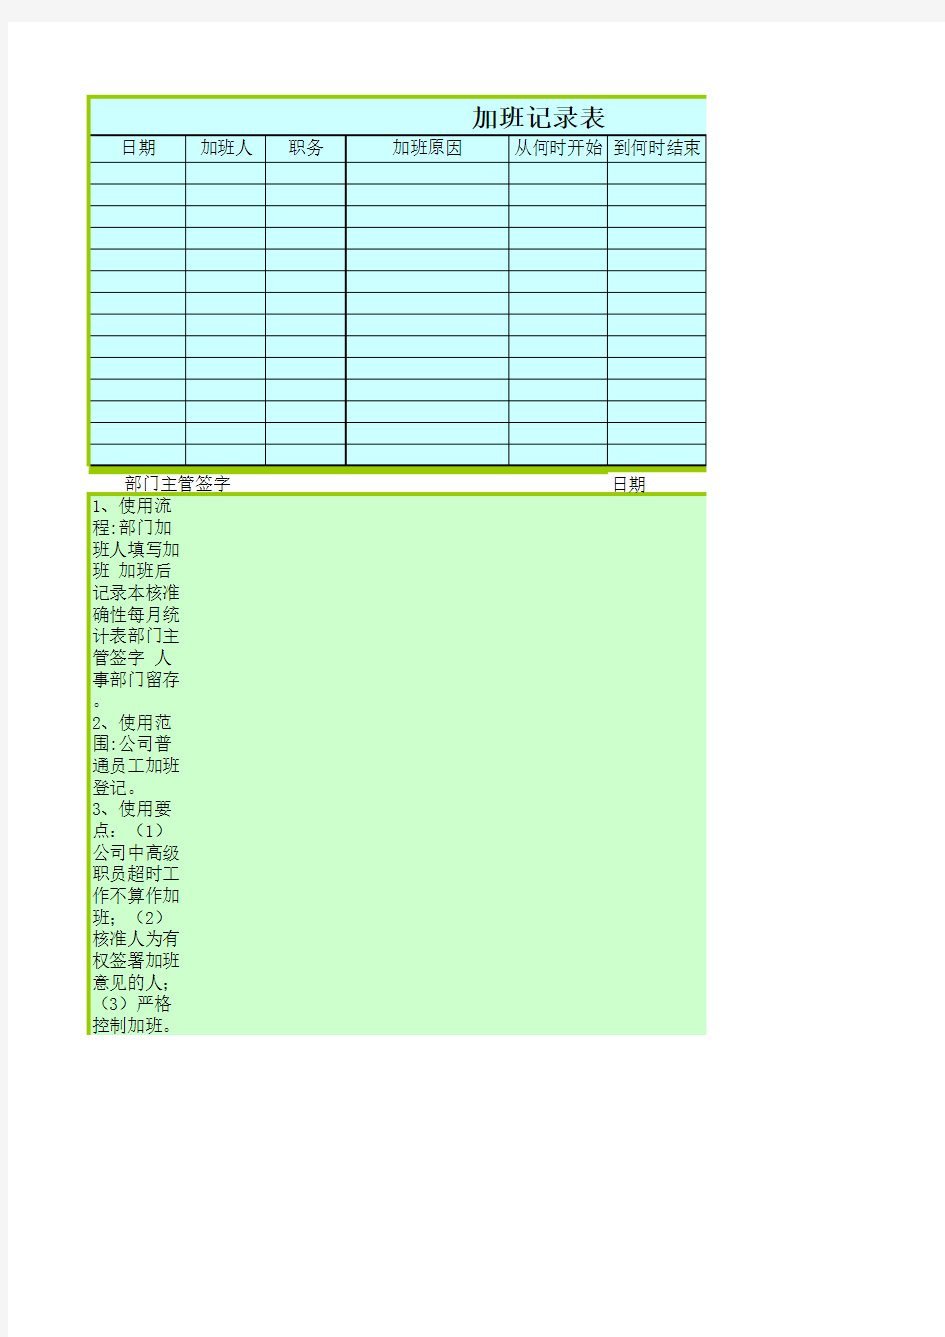 加班记录表加班登记统计表Excel模板